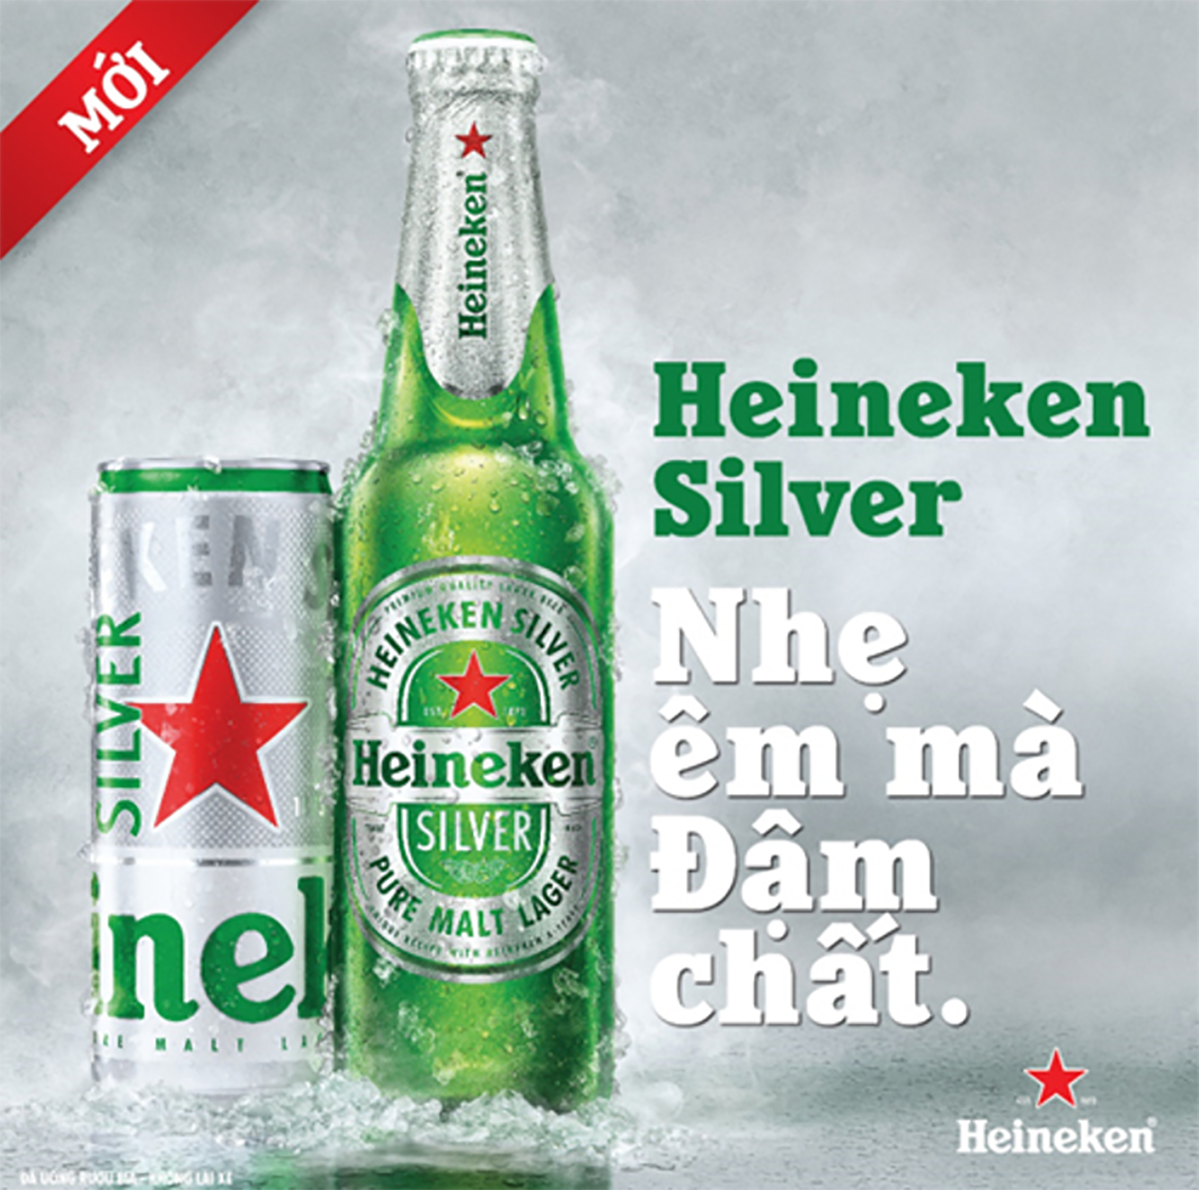 Heineken Silver đích thị là “át chủ bài” của Heineken khi nhắm đến phân khúc người yêu bia theo đuổi phong cách trẻ trung, hiện đại